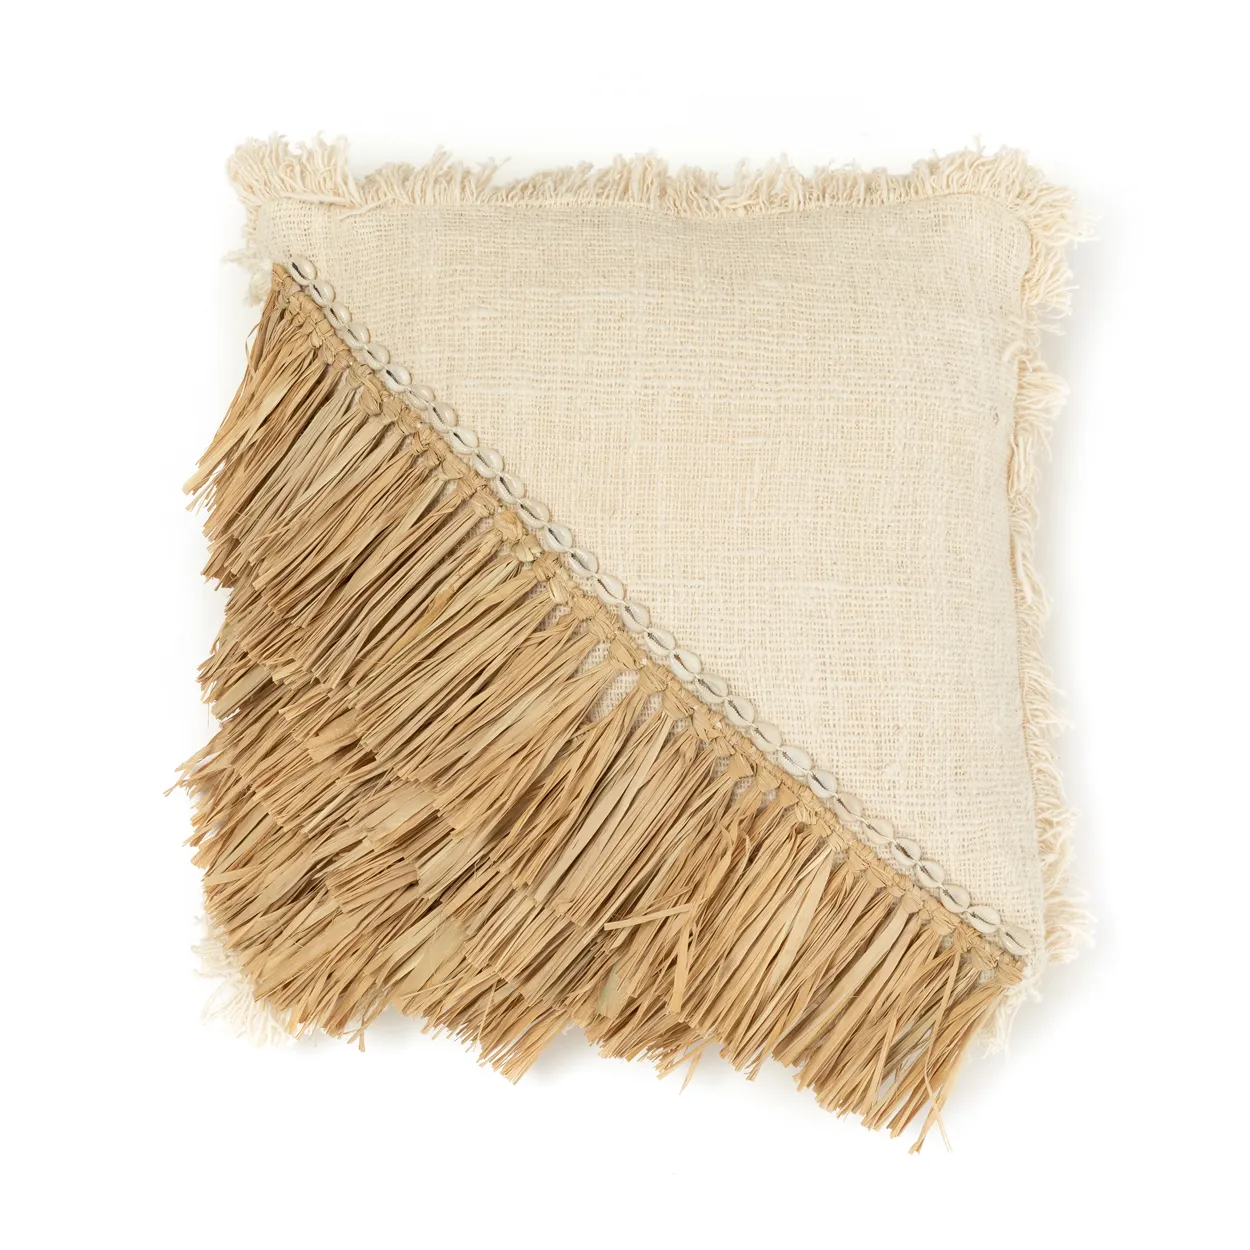 Kissenbezug aus Raffia-Baumwolle - Natur / Weiß - 60x60